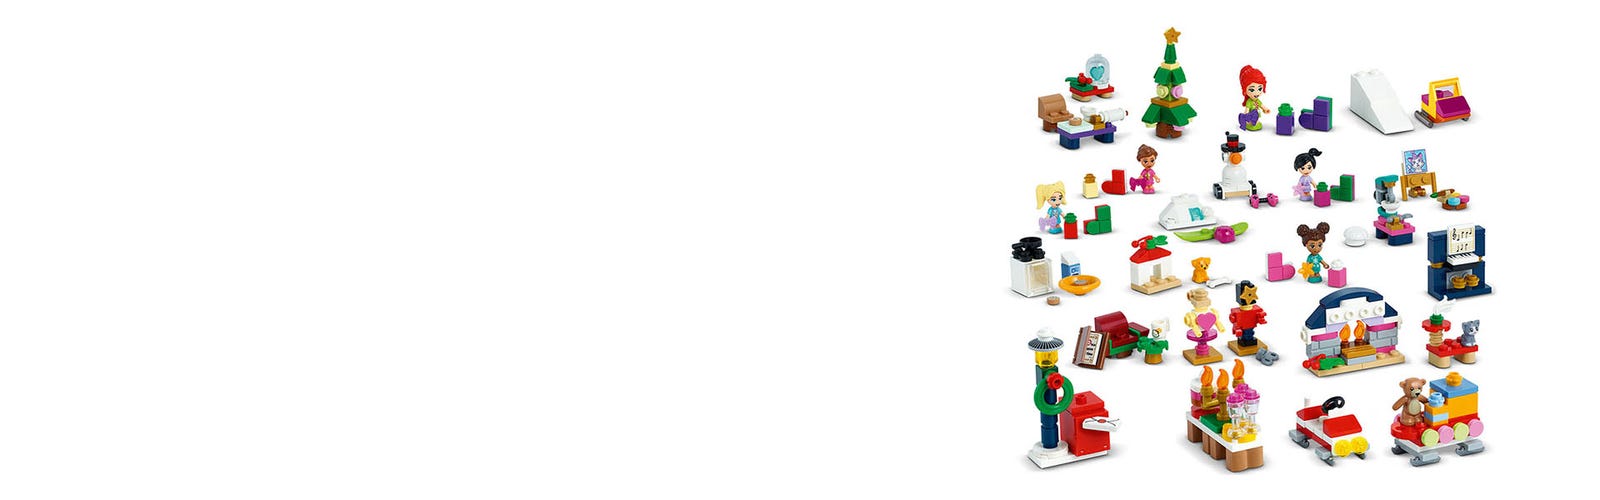 41690 - LEGO® Friends - Le calendrier de l'Avent LEGO® Friends